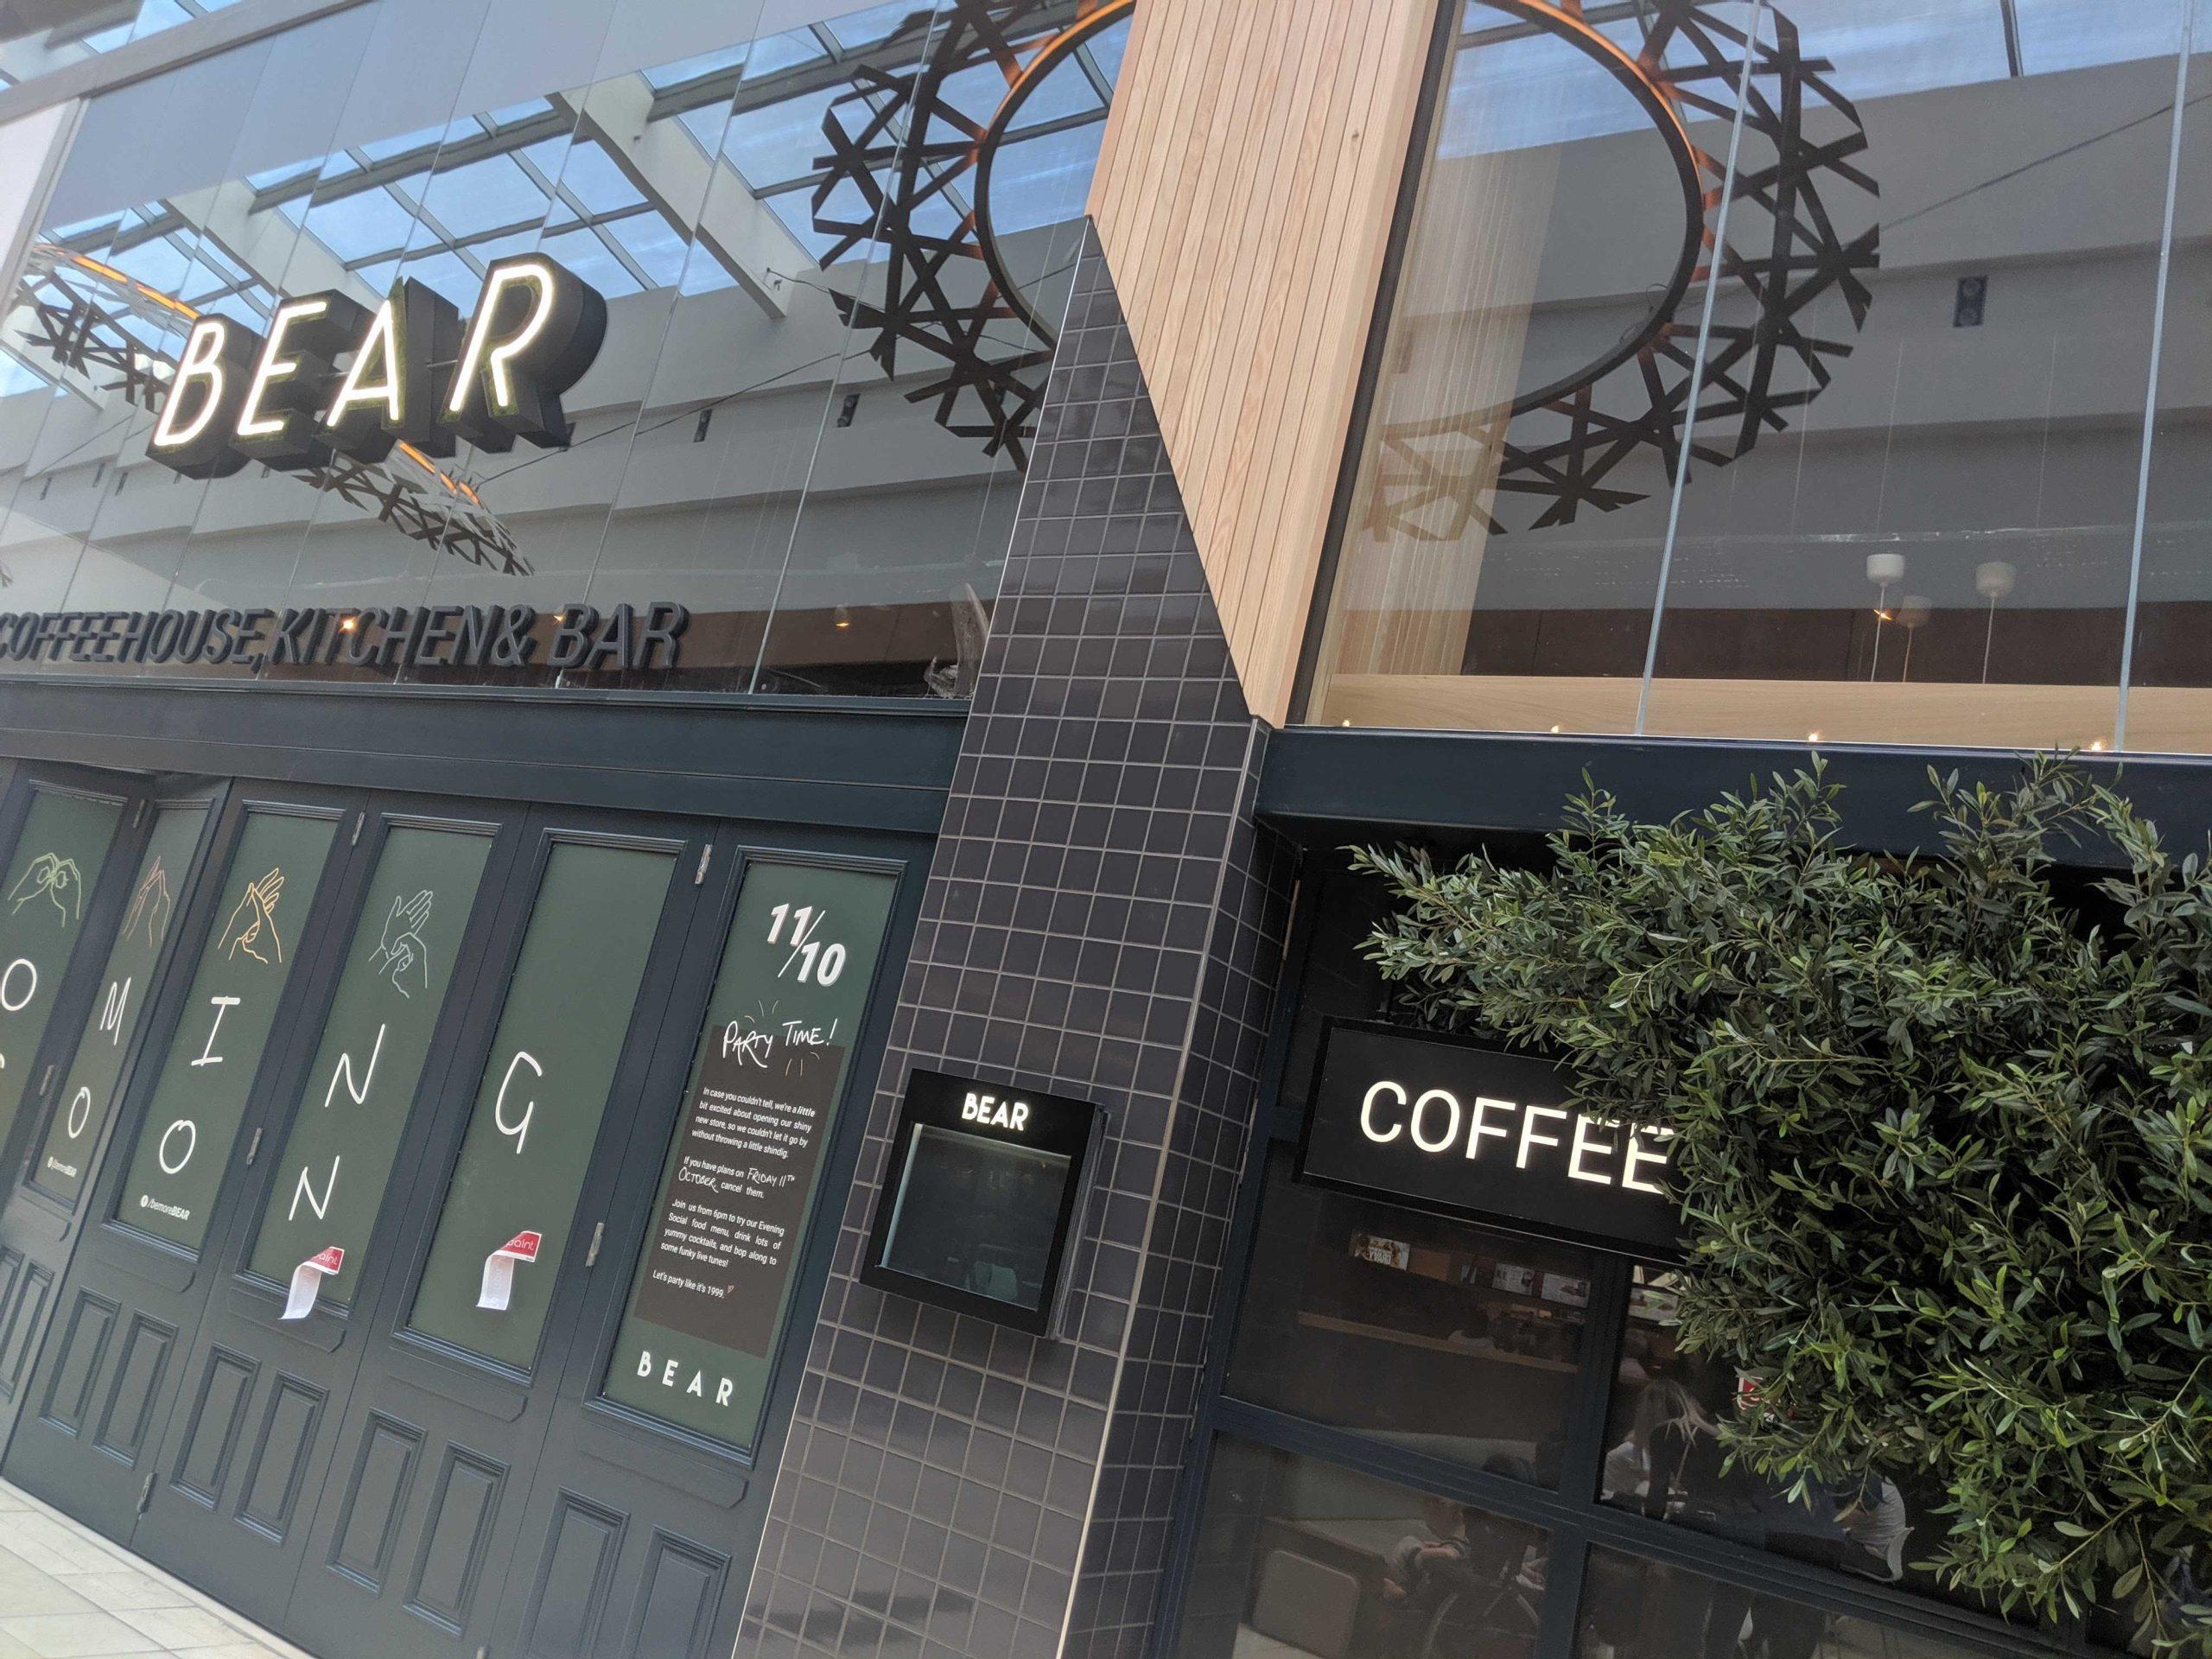 BEAR Cafe - Hangout spots in Derby